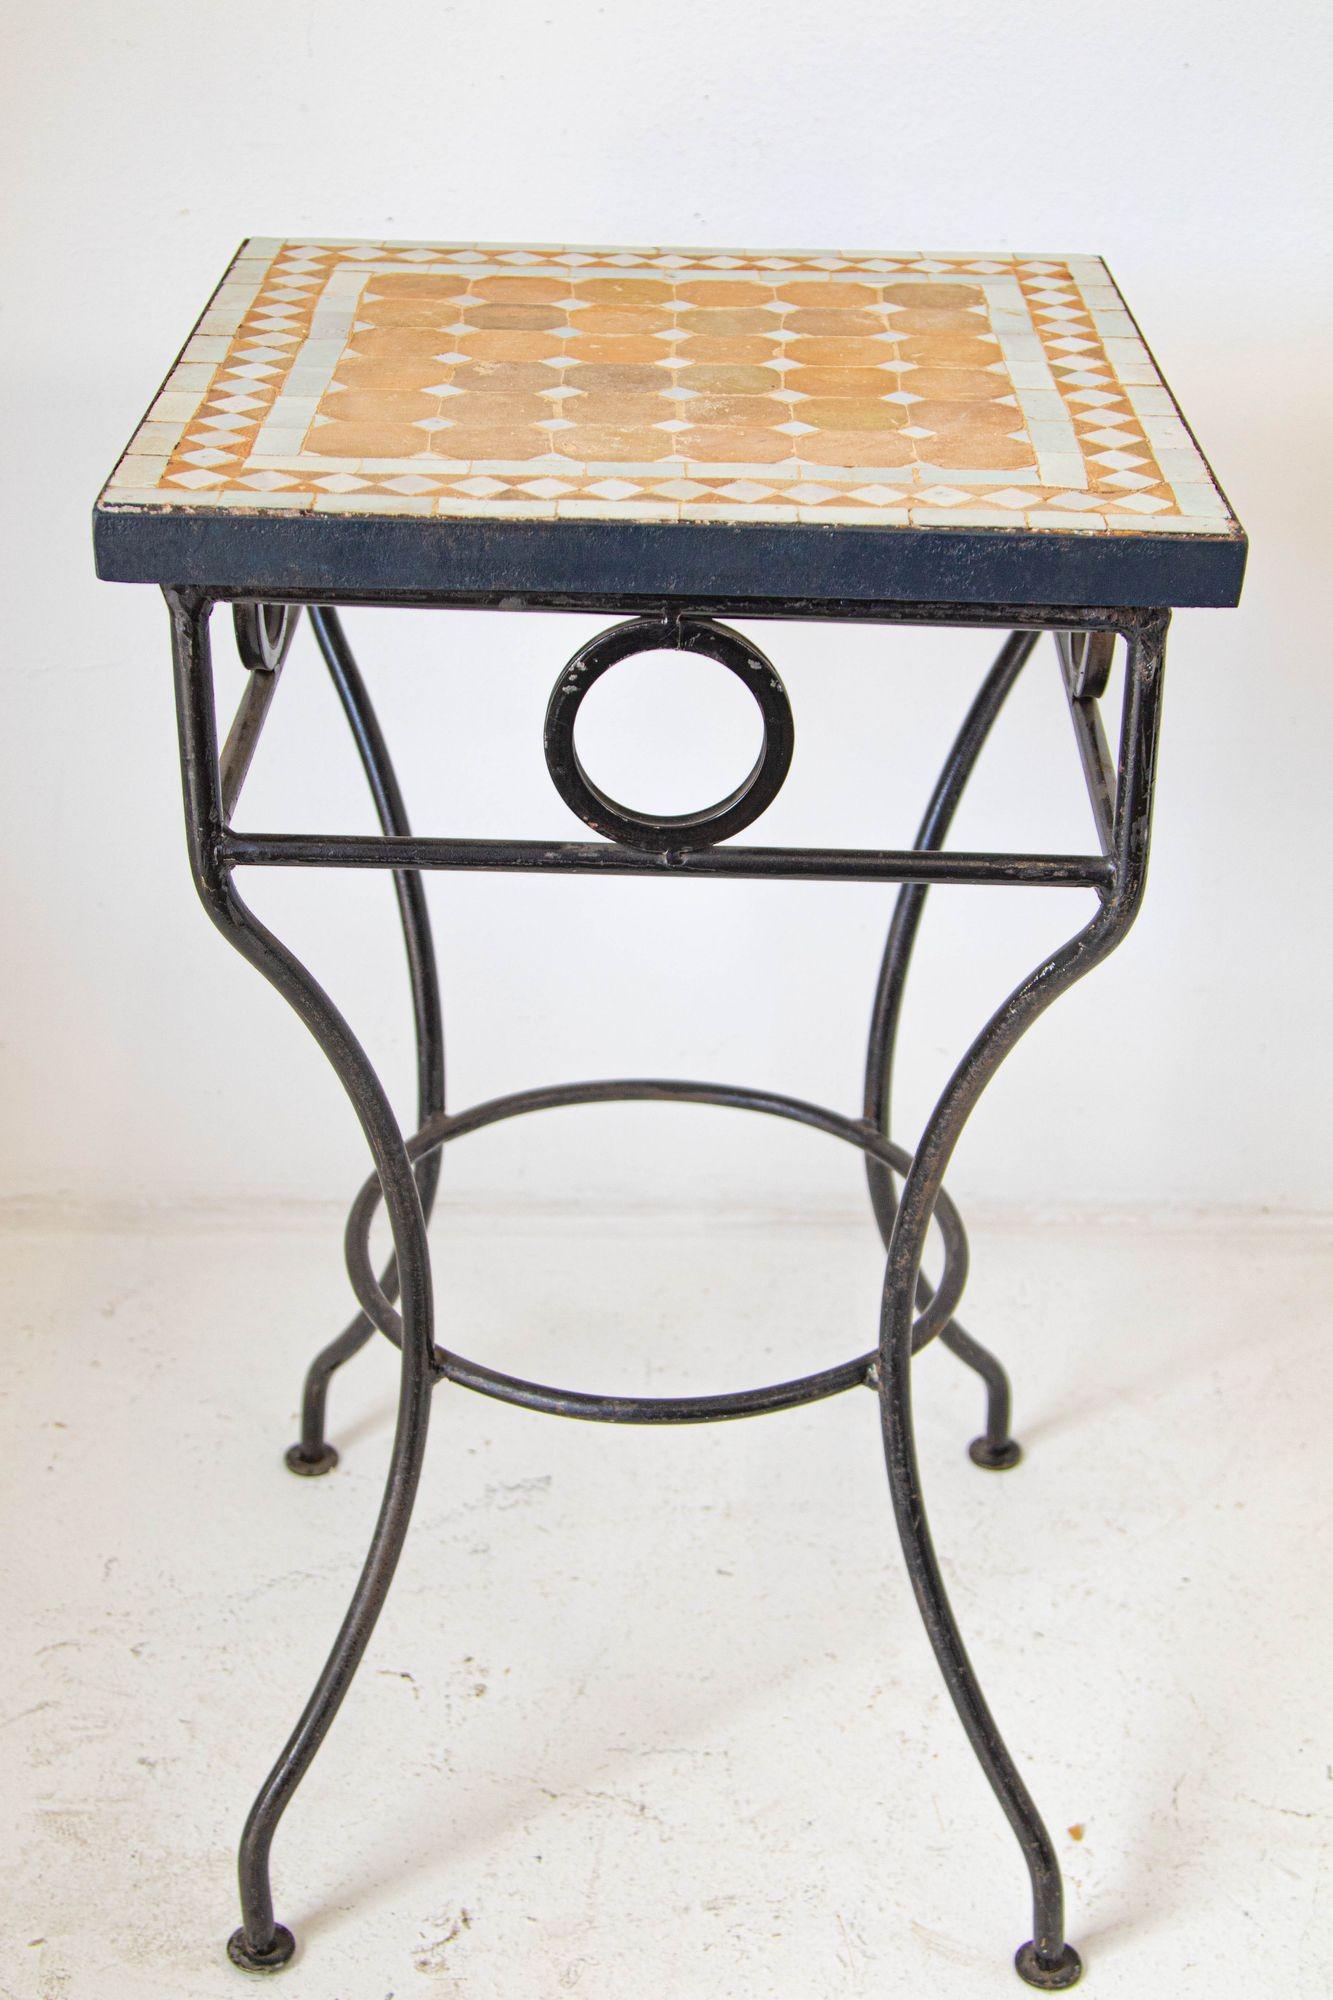 Vintage Marokkanische Mosaikfliesen Tisch im Freien.
Quadratischer Bistrotisch mit marokkanischen Mosaikfliesen auf einem Eisengestell.
Handgefertigt von erfahrenen Kunsthandwerkern in Fez, Marokko, unter Verwendung von alten glasierten Elfenbein-